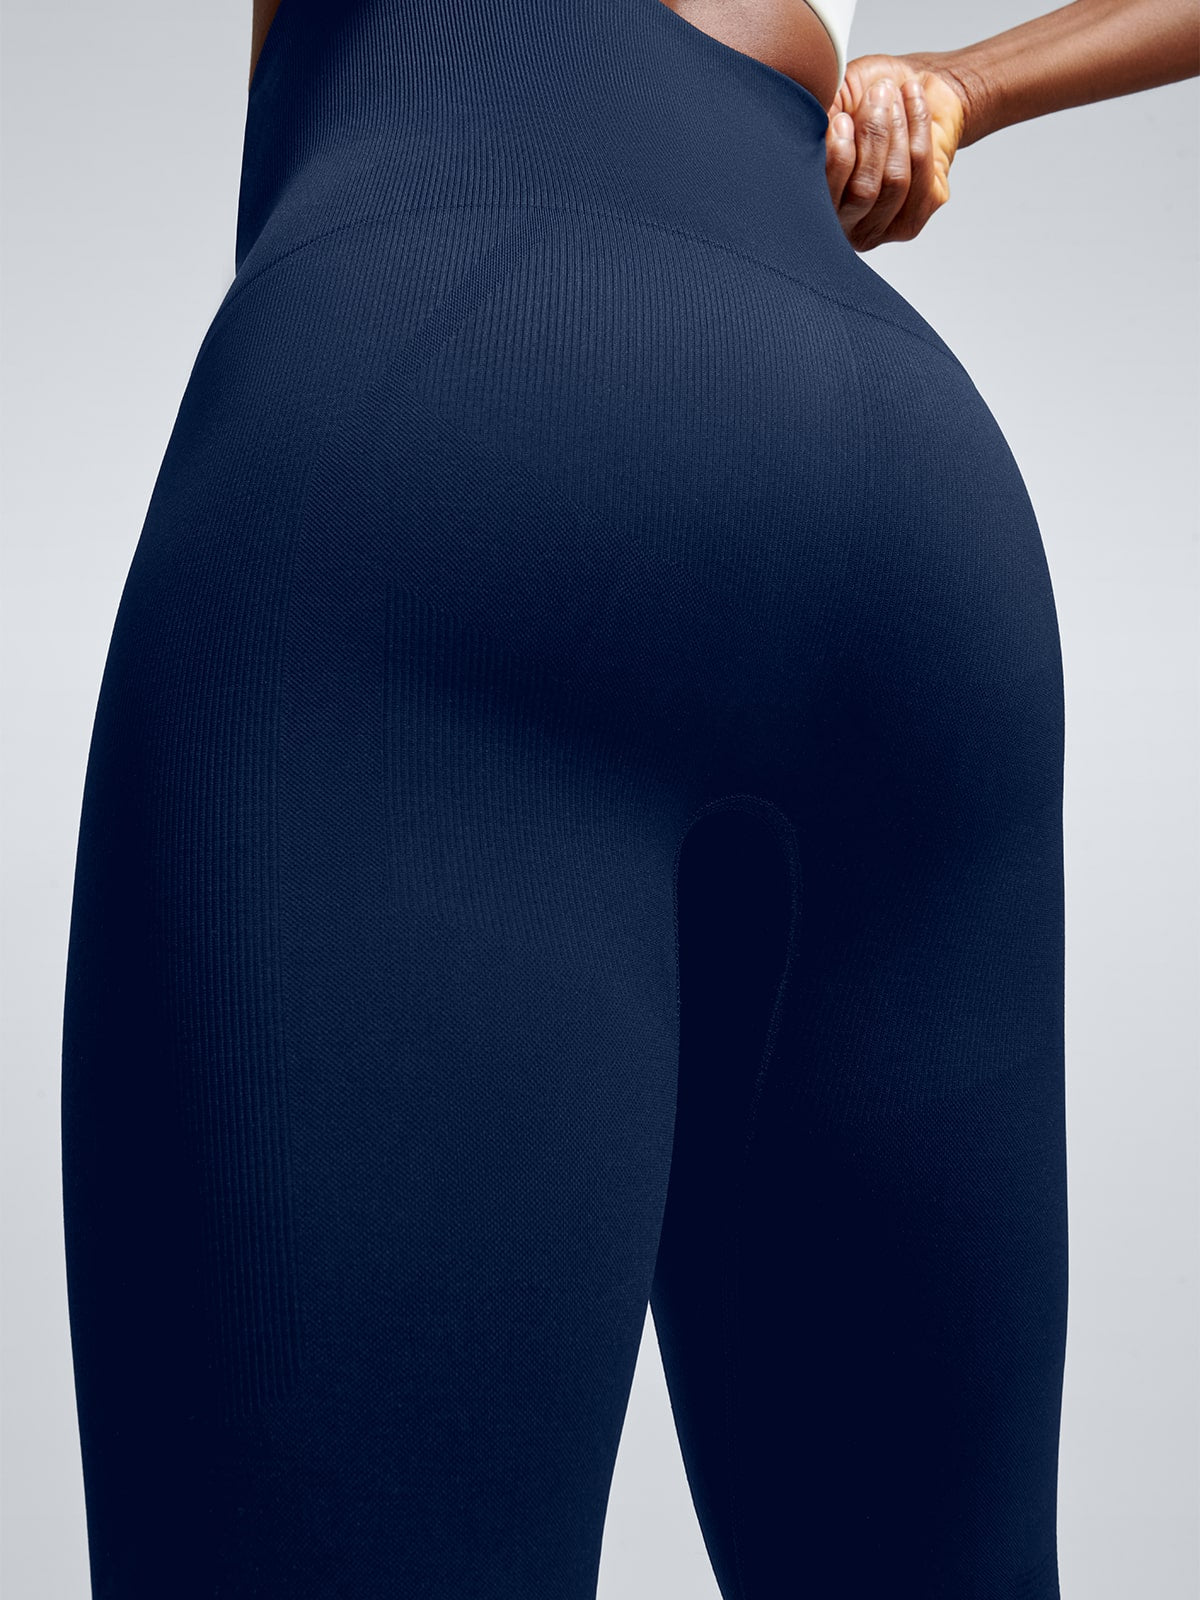 Electrify your wardrobewith our new @lndr leggings #mysportsedit